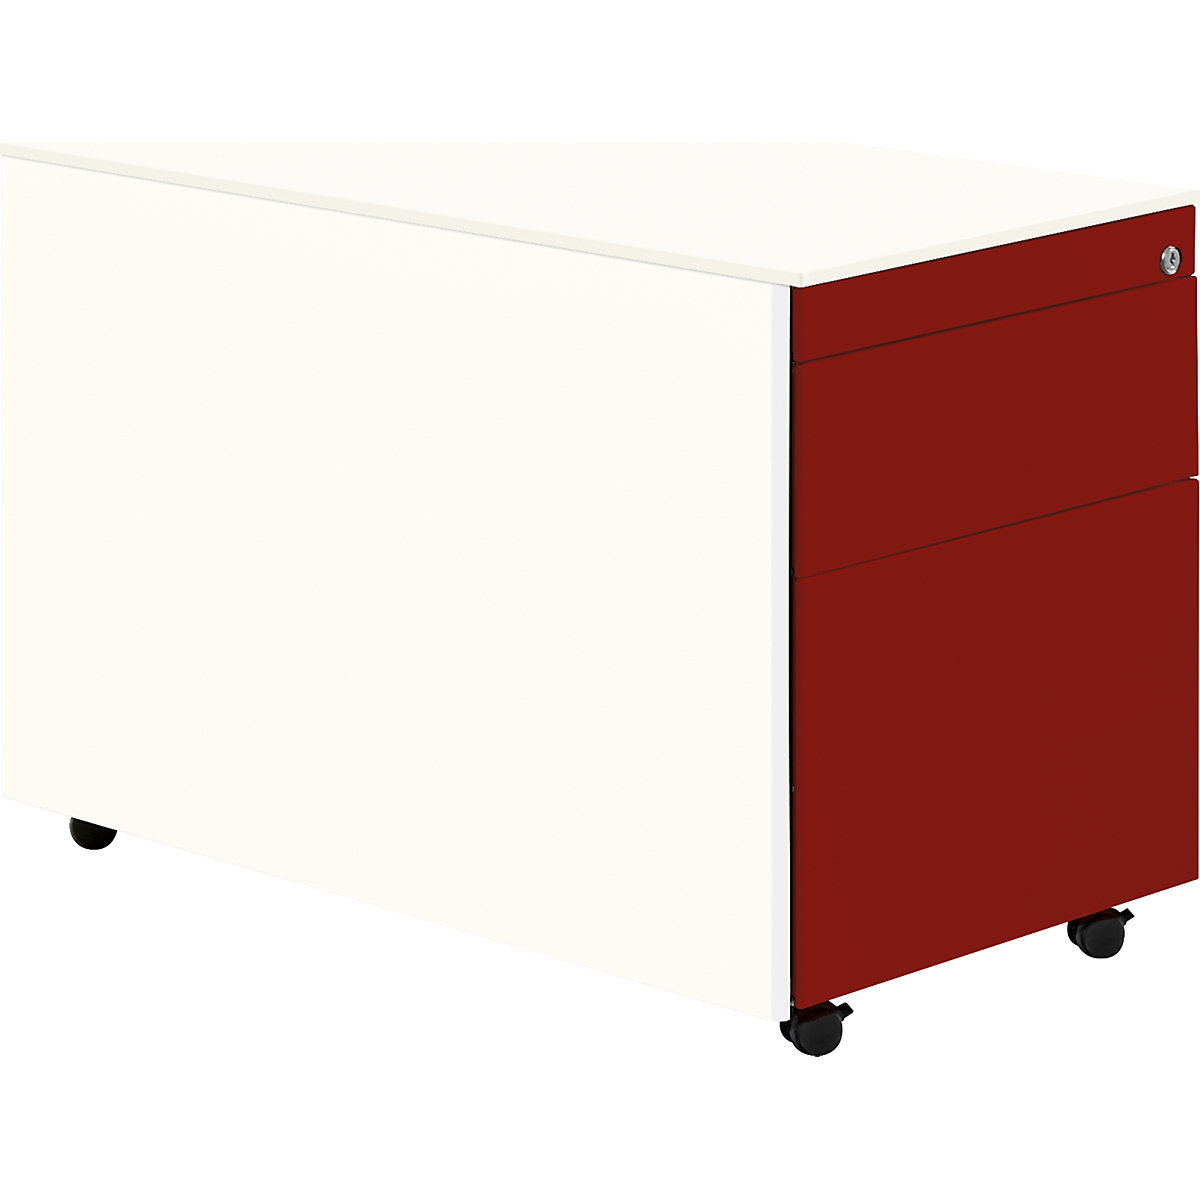 Schubladencontainer mit Rollen mauser, HxT 570 x 800 mm, 1 Materialschub, 1 Hängeregistratur, reinweiß / rubinrot / reinweiß-7